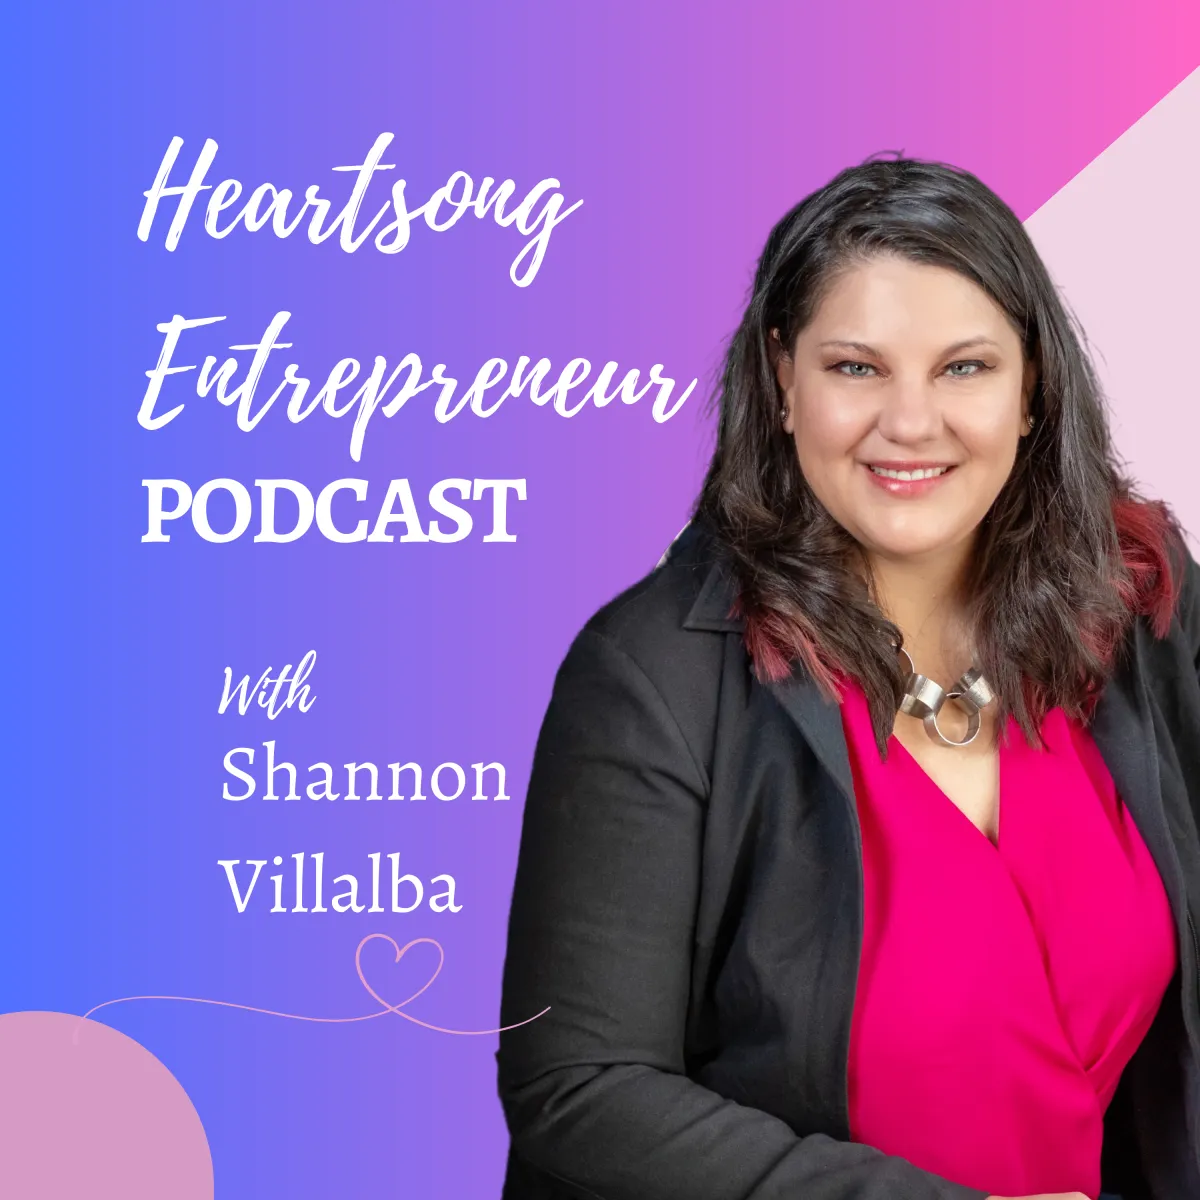 Heartsong Entrepreneur Podcast